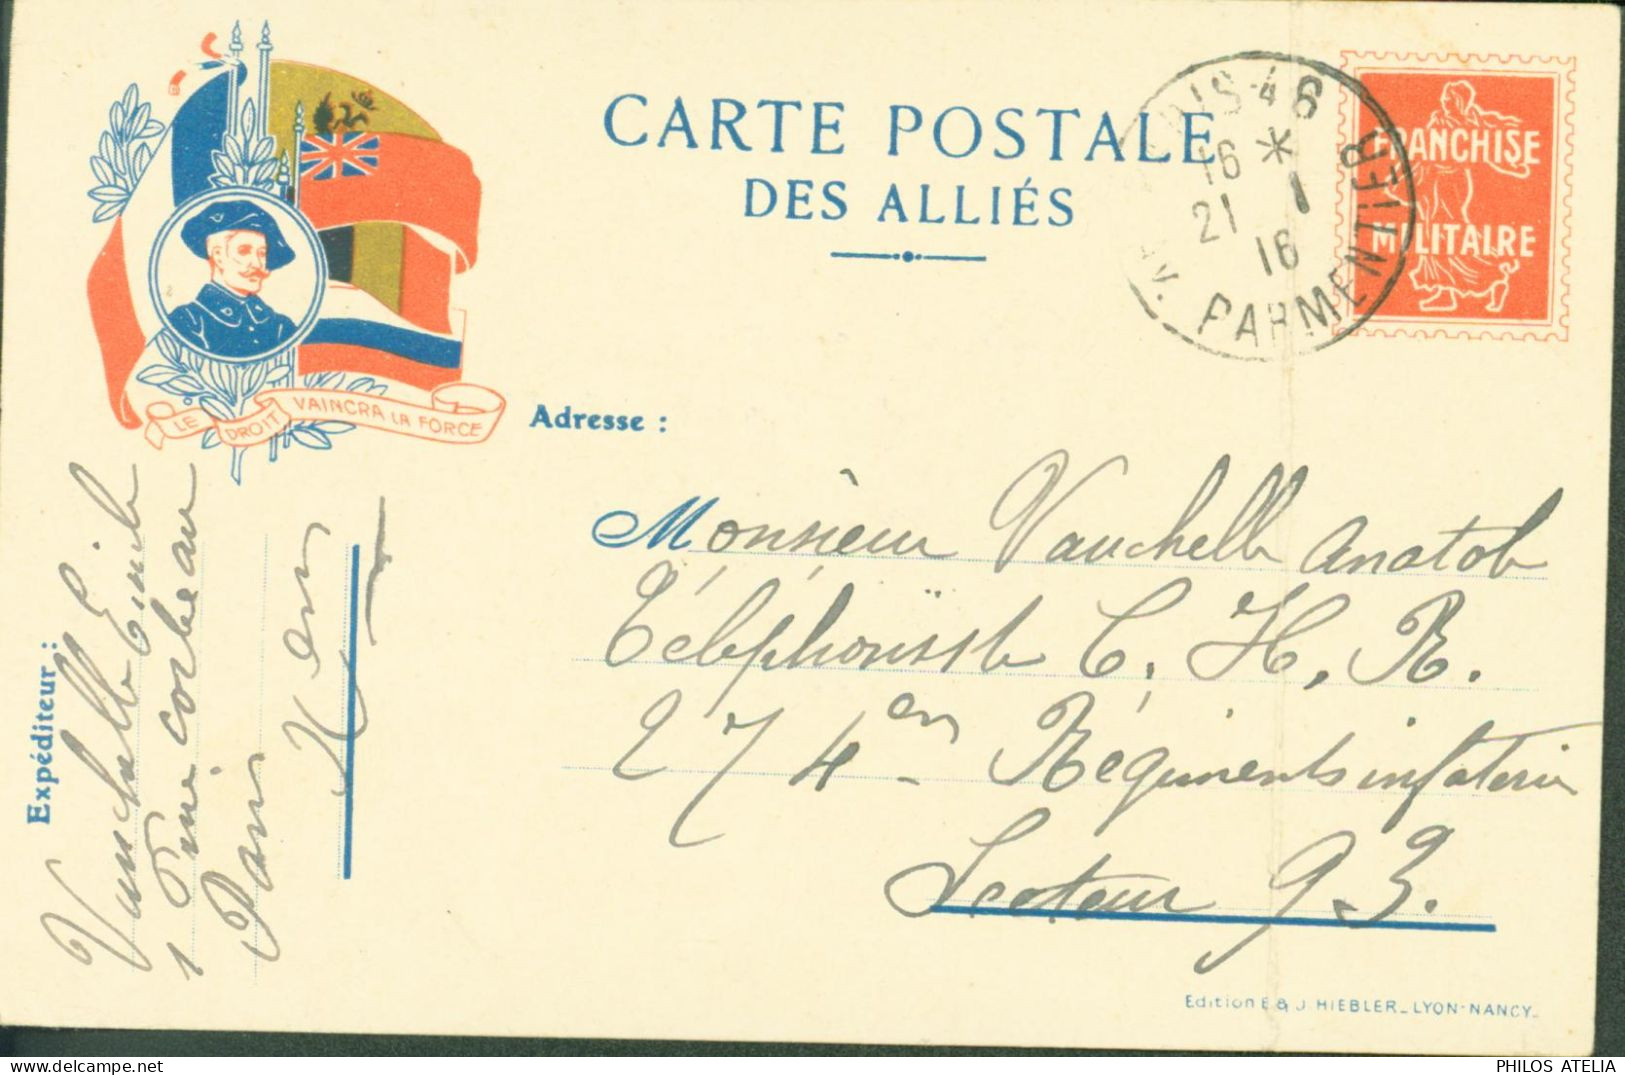 Guerre 14 Carte Postale Des Alliés Drapeaux Franchise Militaire Fausse Semeuse CP FM Le Droit Vaincra La Force - Guerra Del 1914-18